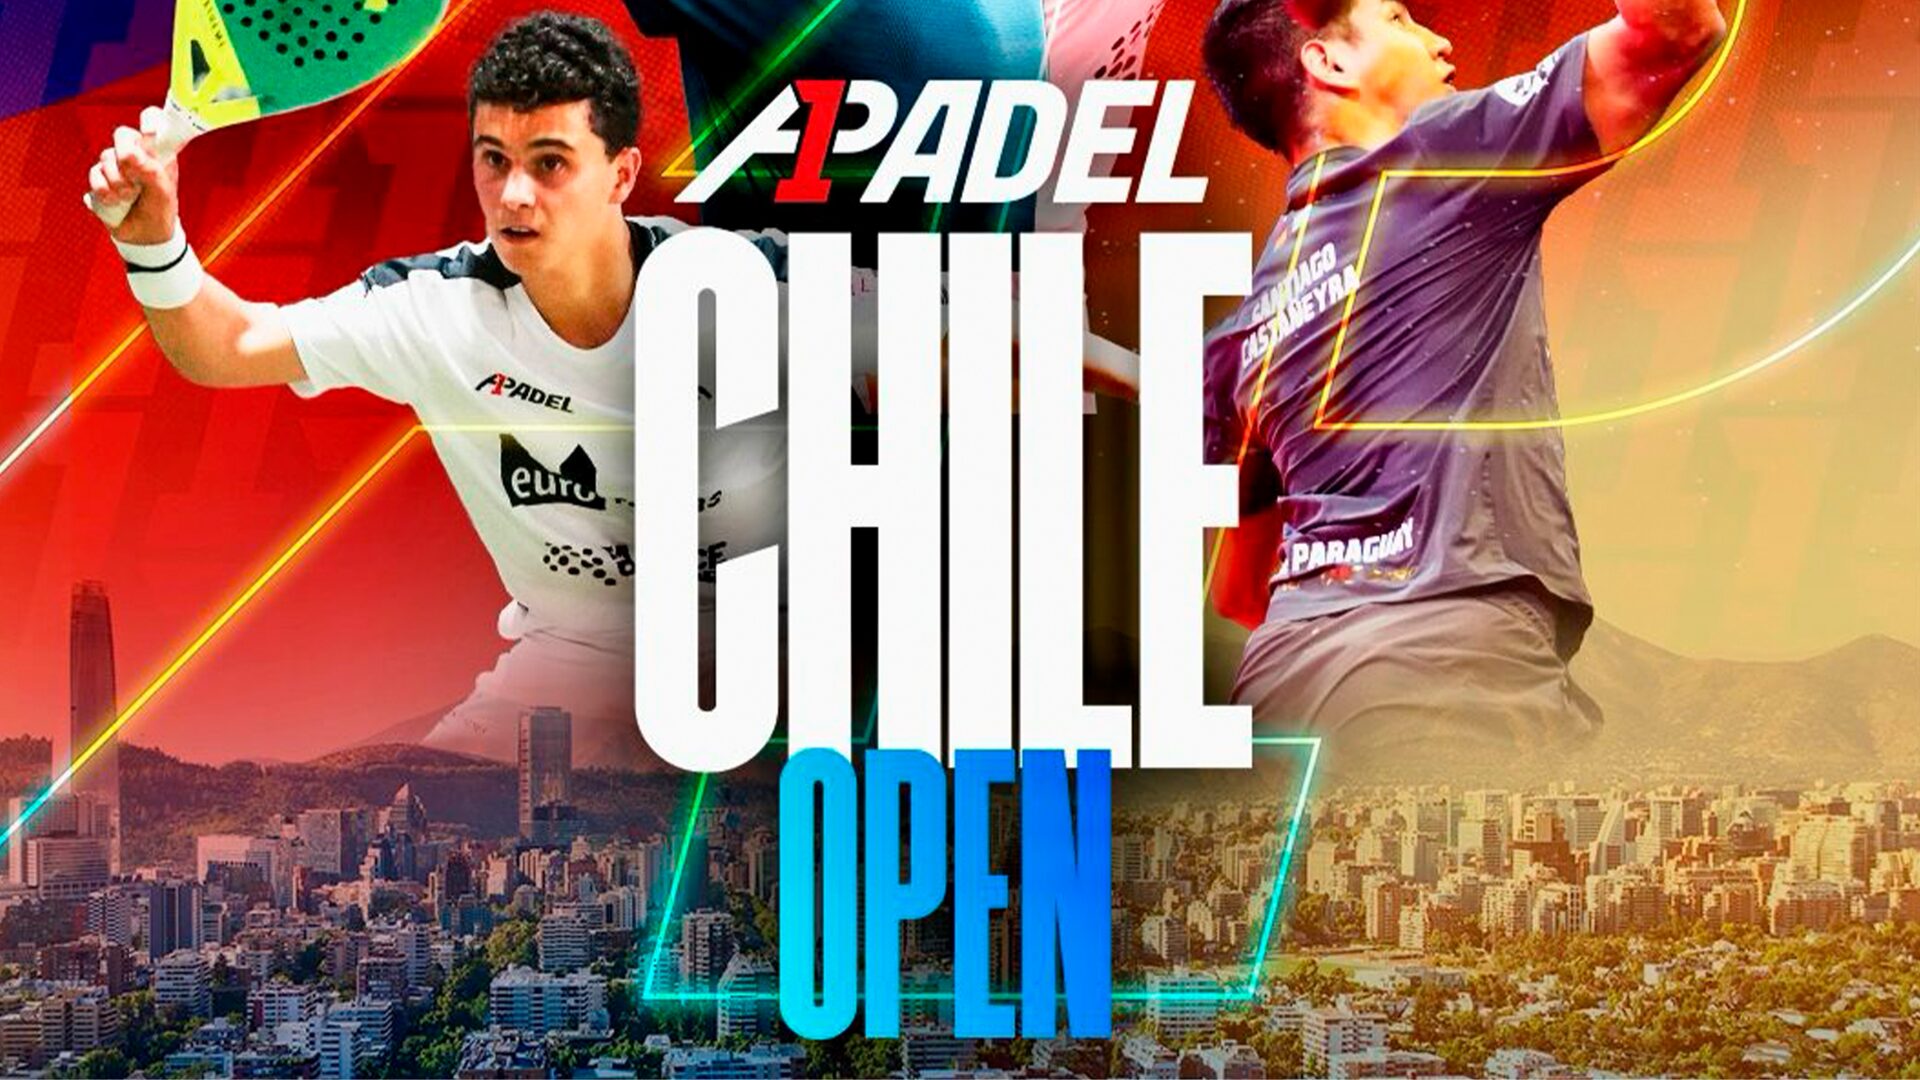 A1 Padel ：チリオープンに行こう！